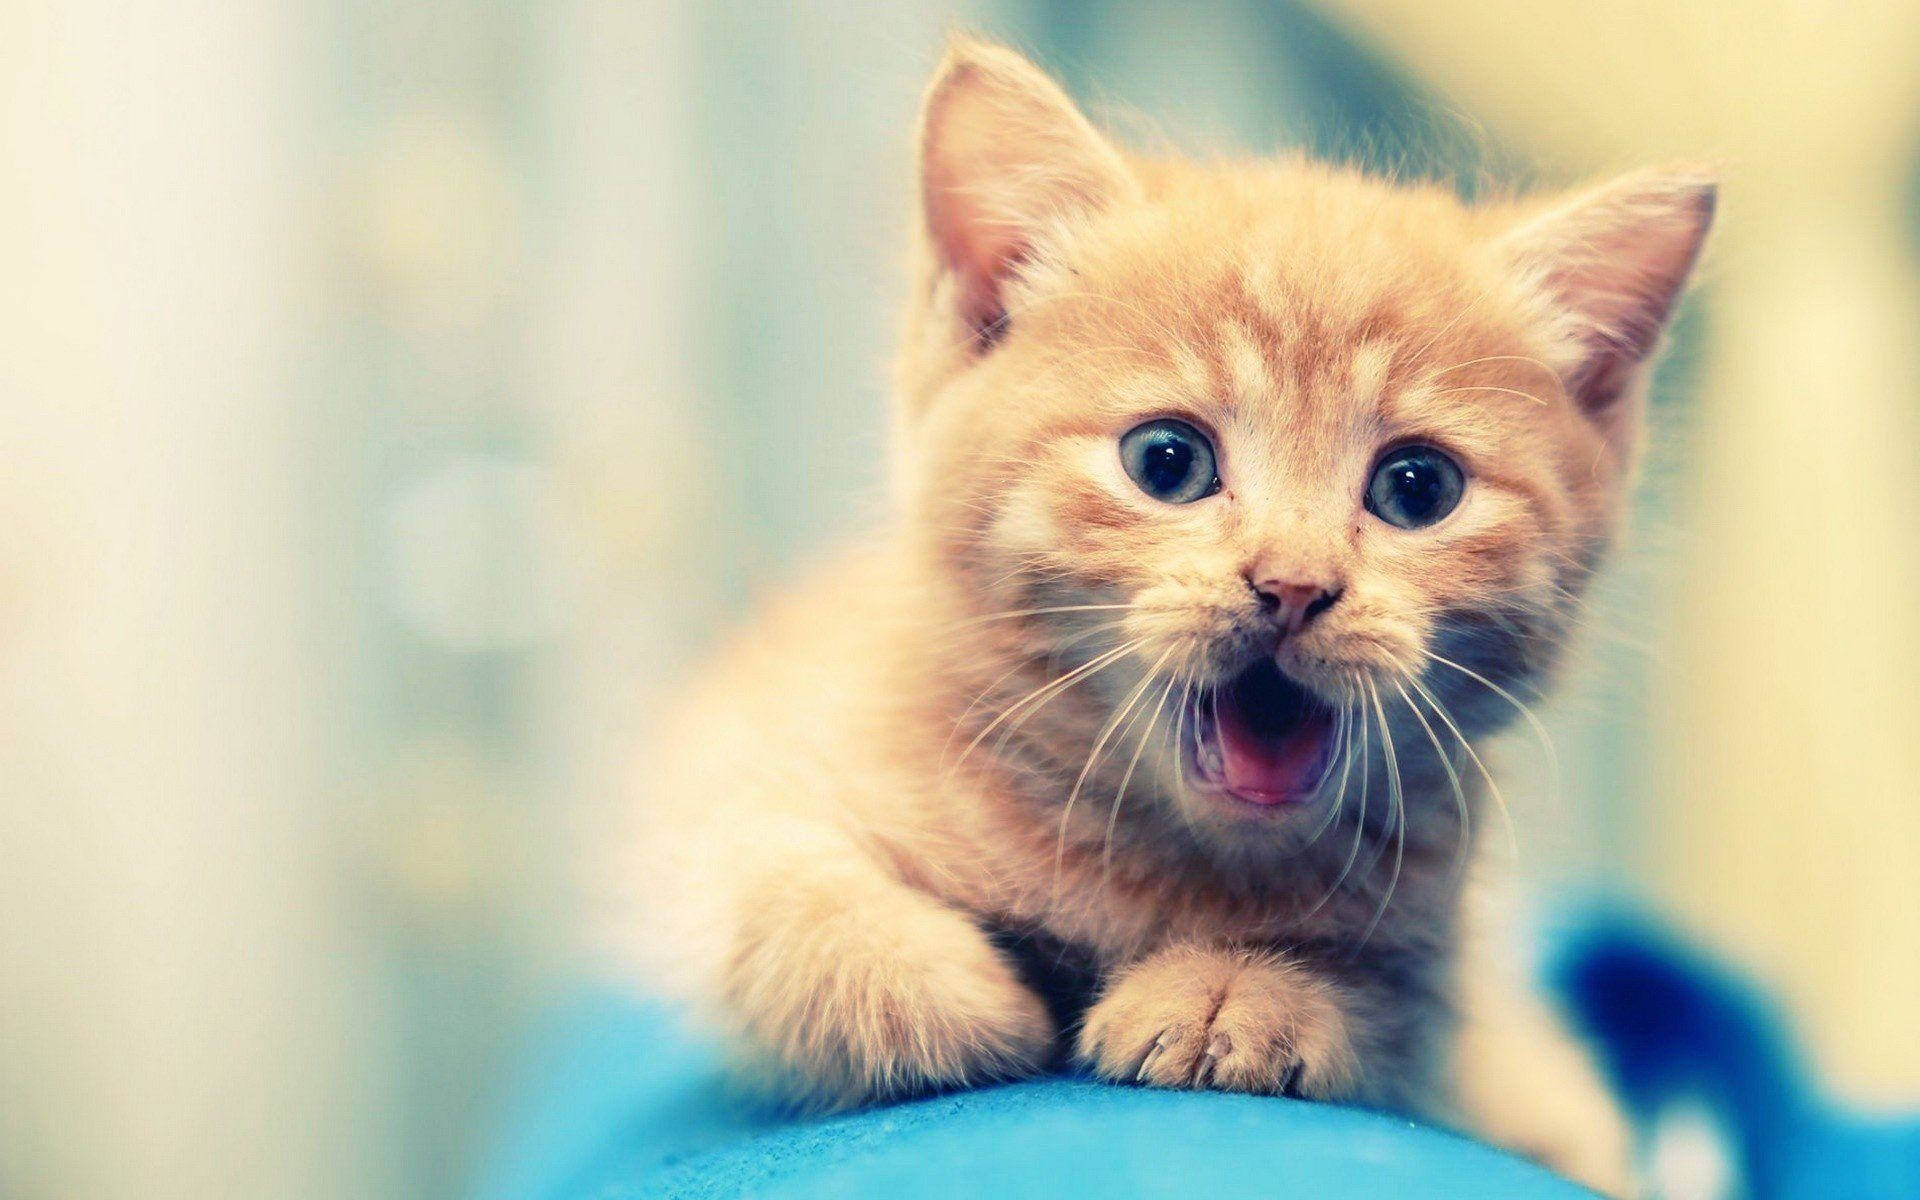 Cute Little Kitten Animal Portrait